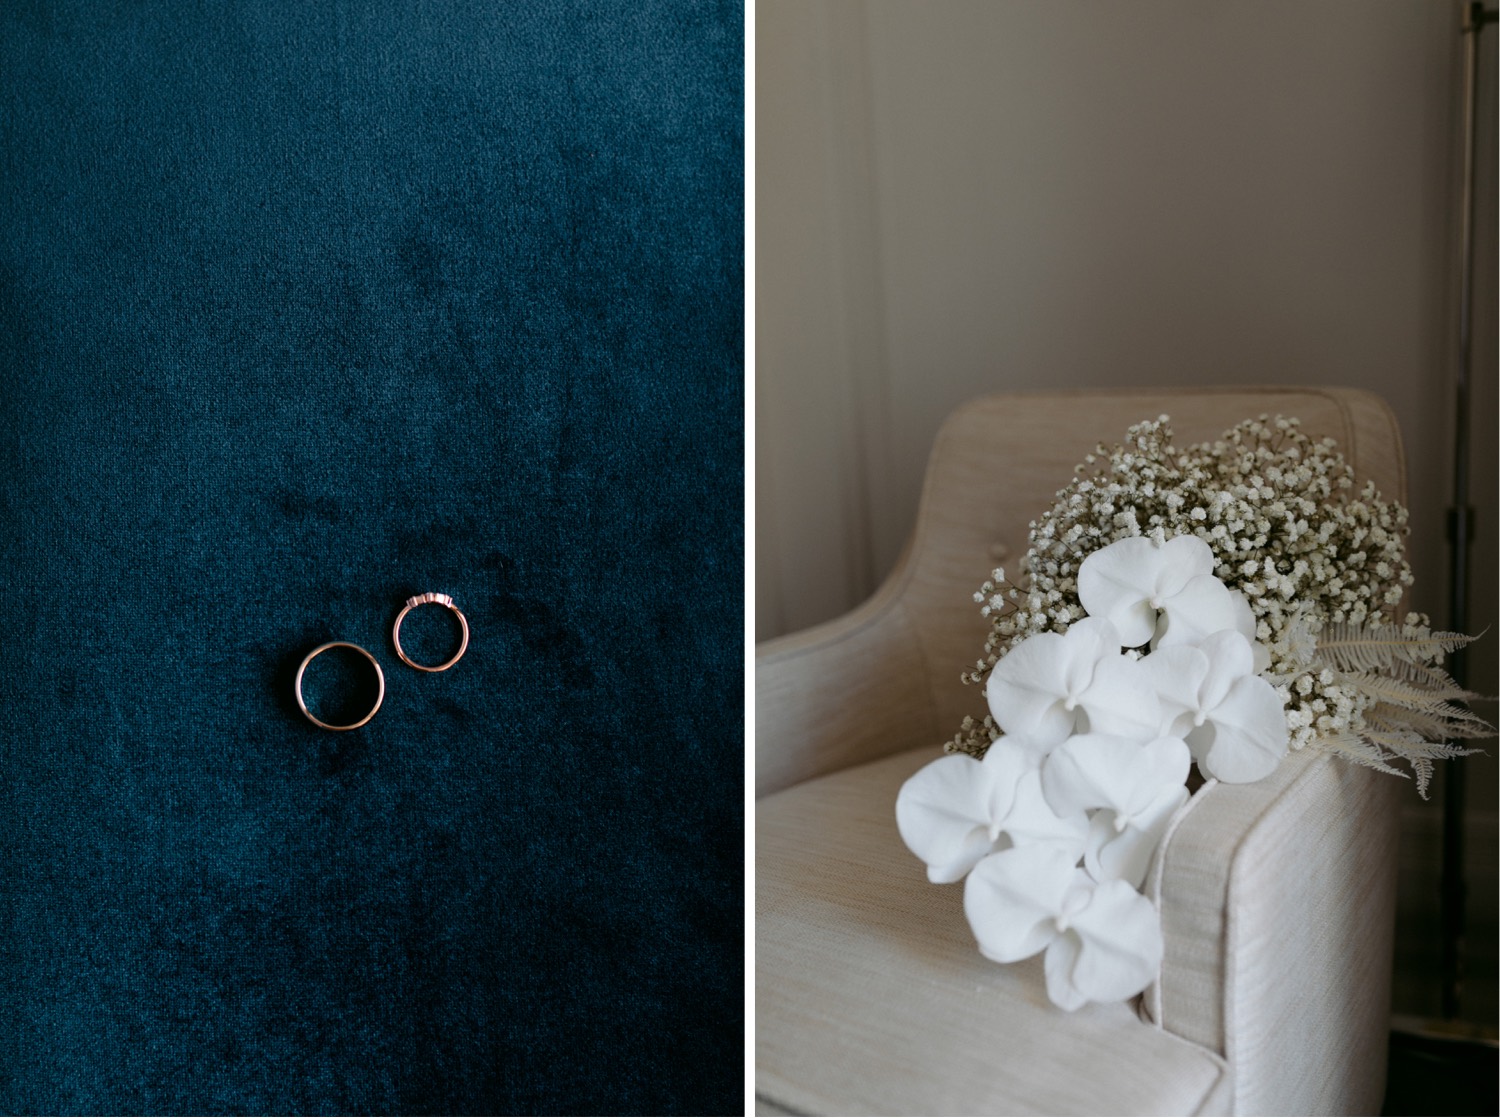 close up on weddings rings against dark blue velvet